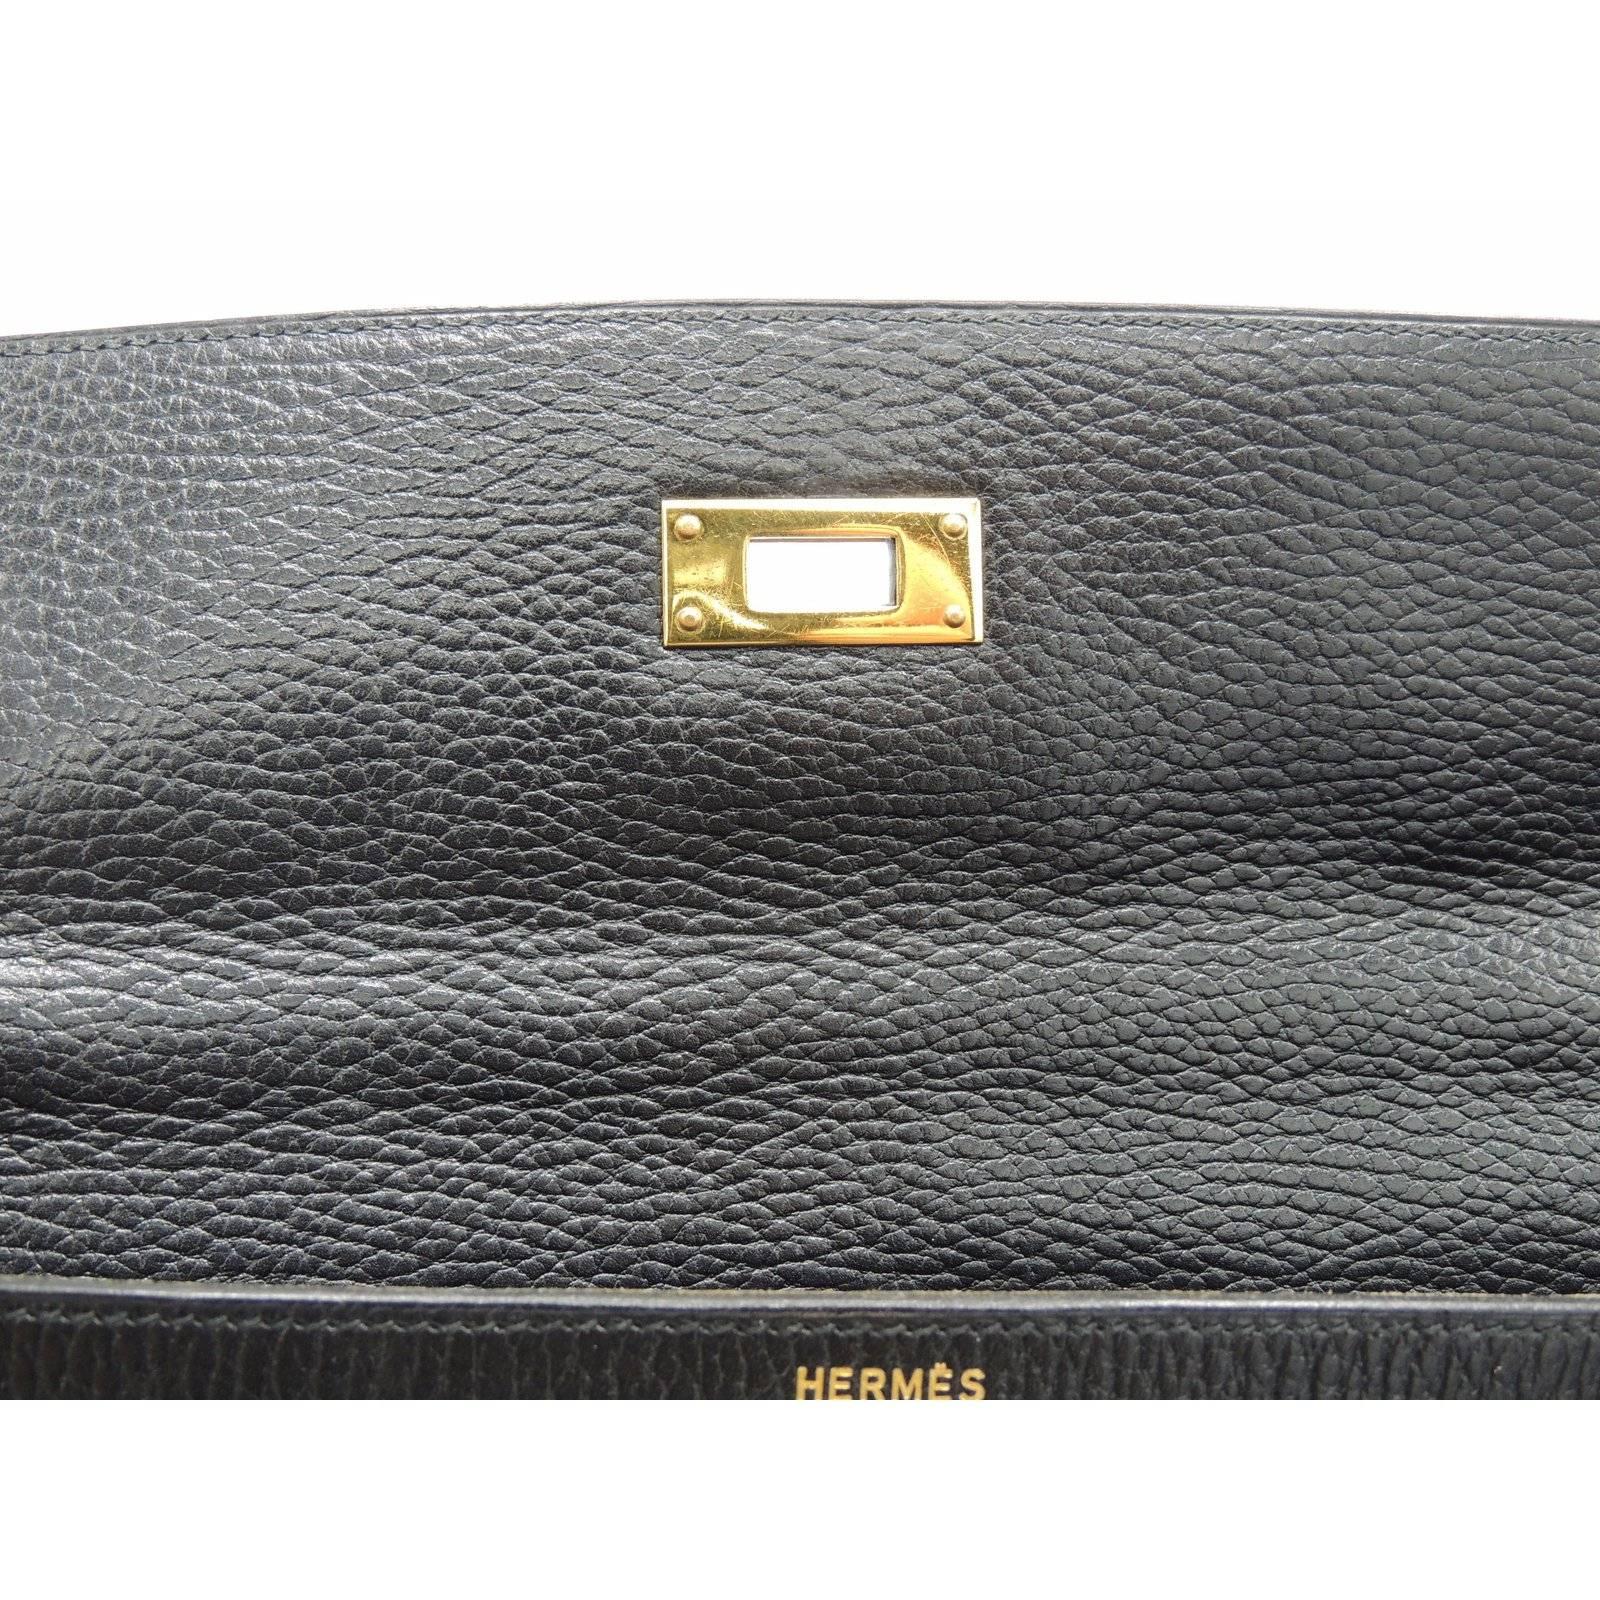 Hermes Vintage Kelly Bag Ardennes Black Leather Gold Hardware 35 cm 5